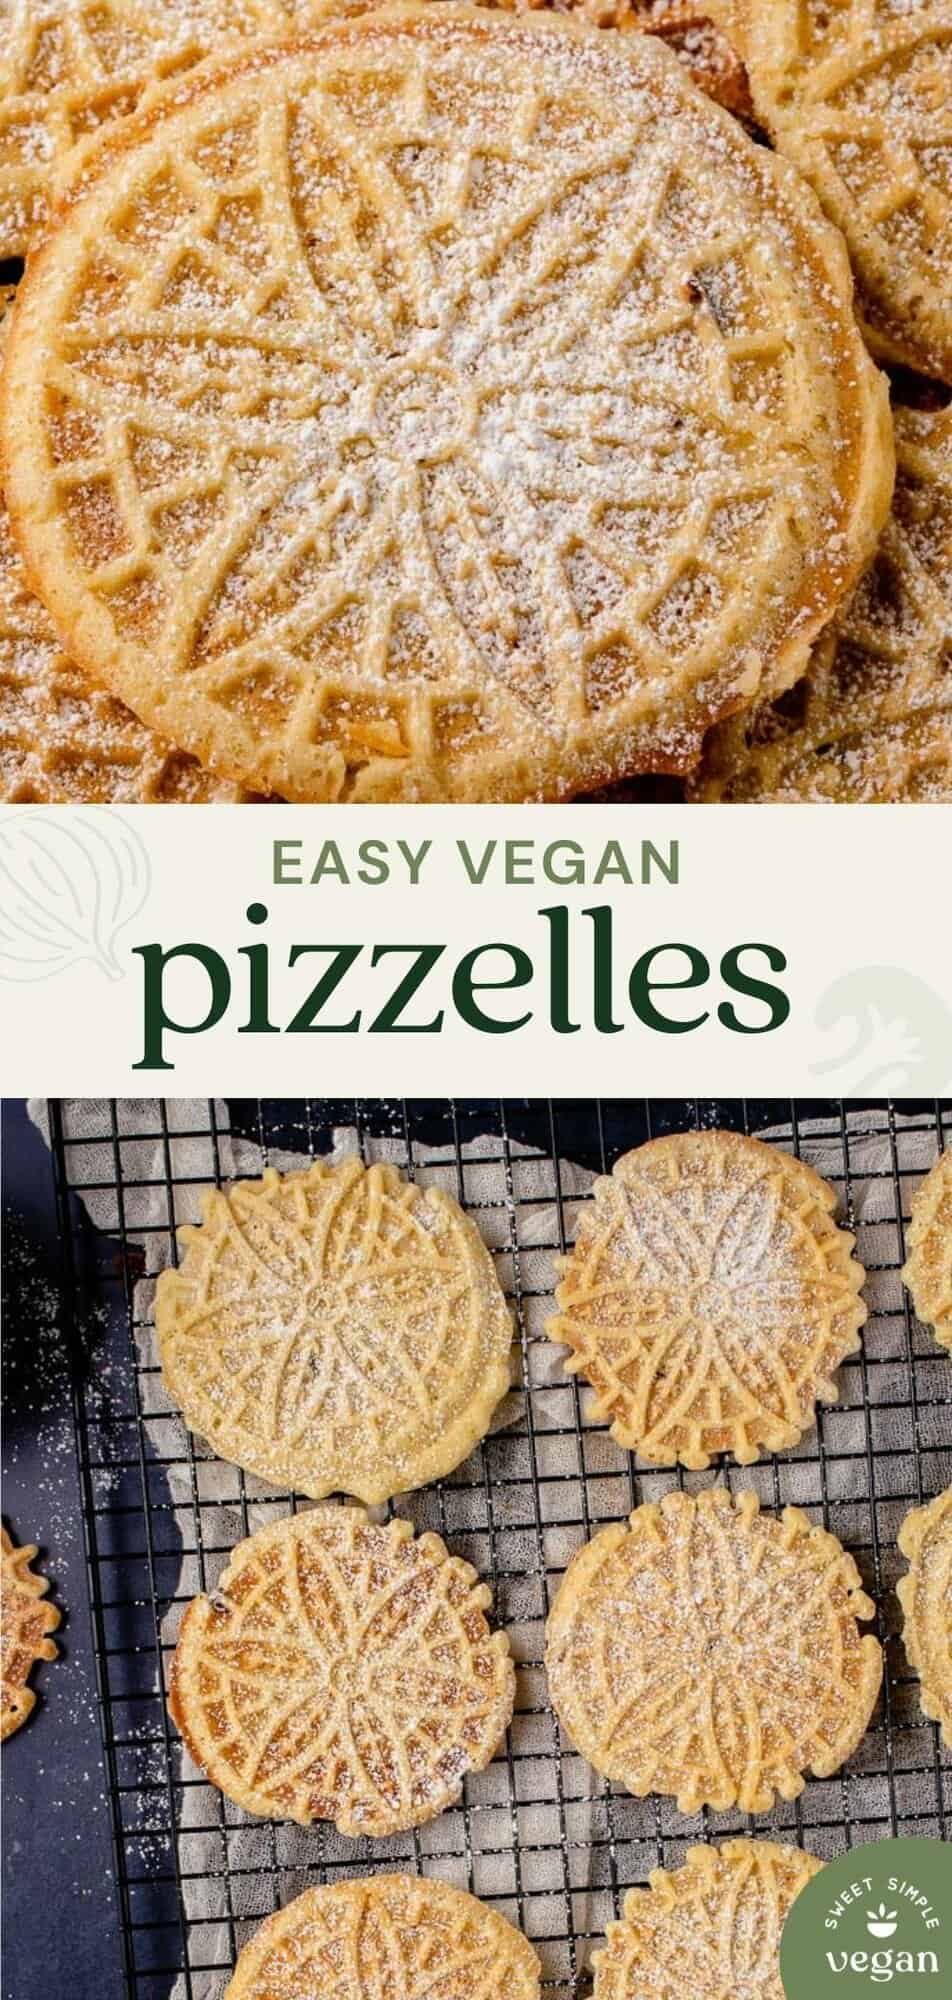 vegan pizzelles image for pinterest